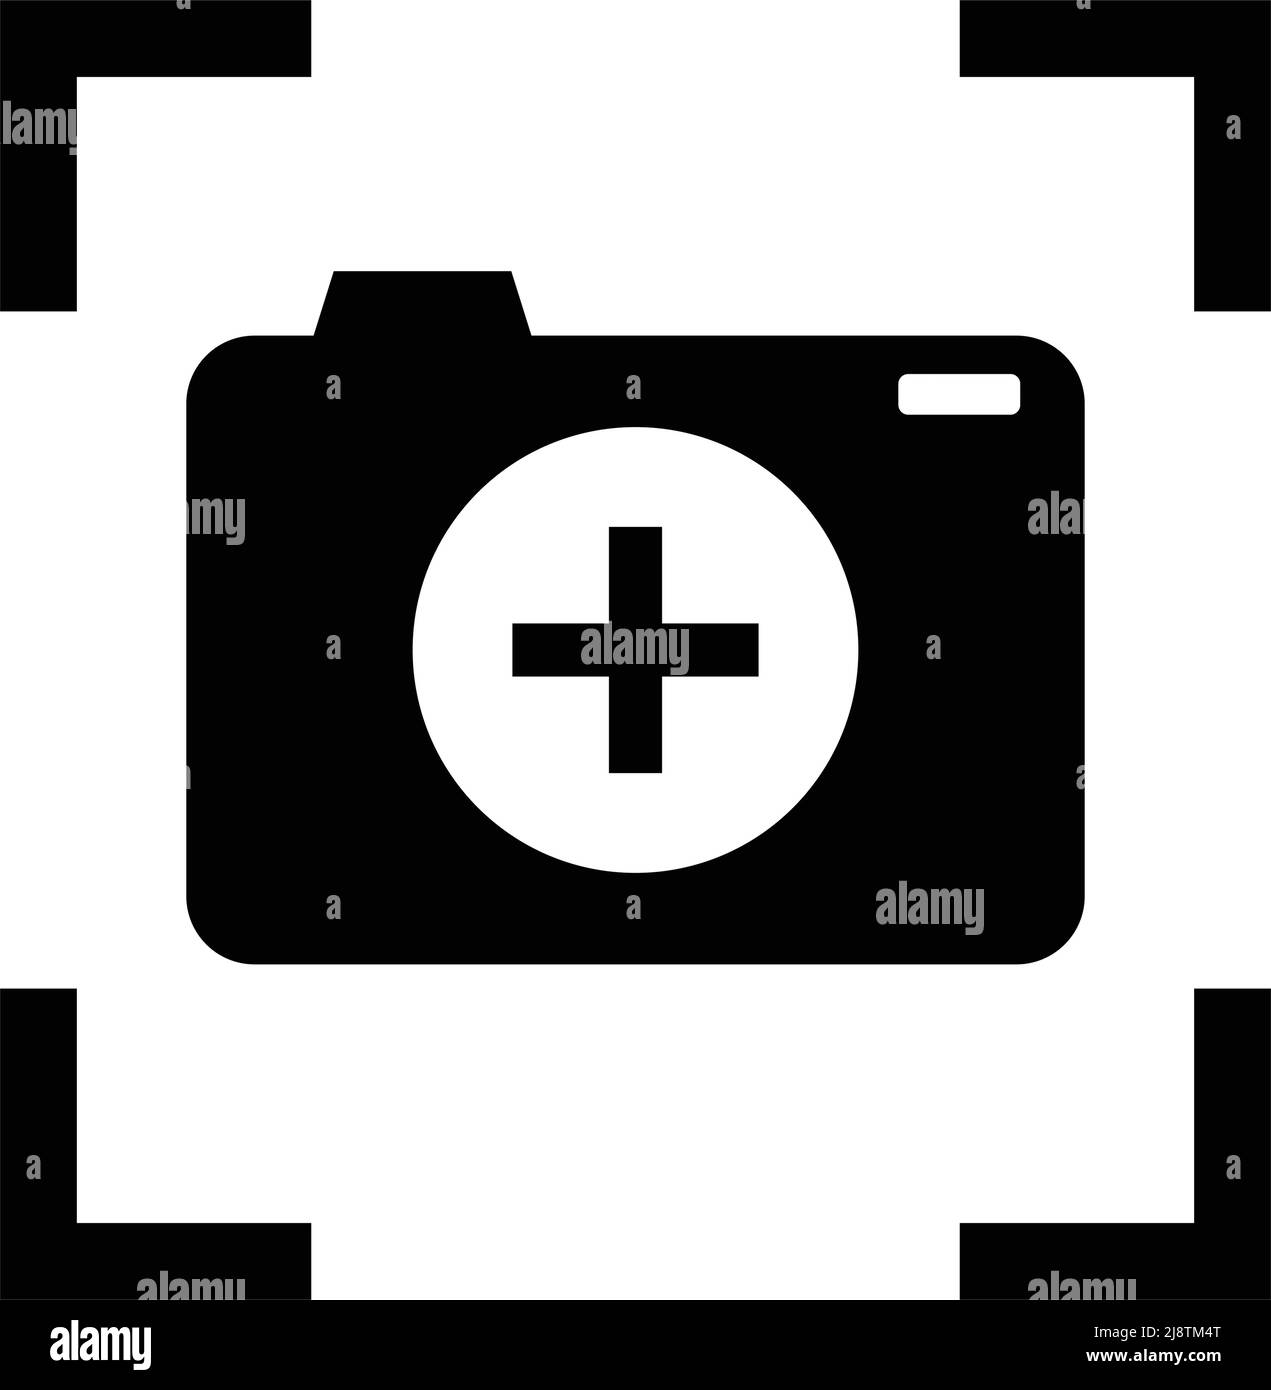 Icona della fotocamera all'interno di un'icona di messa a fuoco. Vettore dell'icona di destinazione. Vettore modificabile. Illustrazione Vettoriale